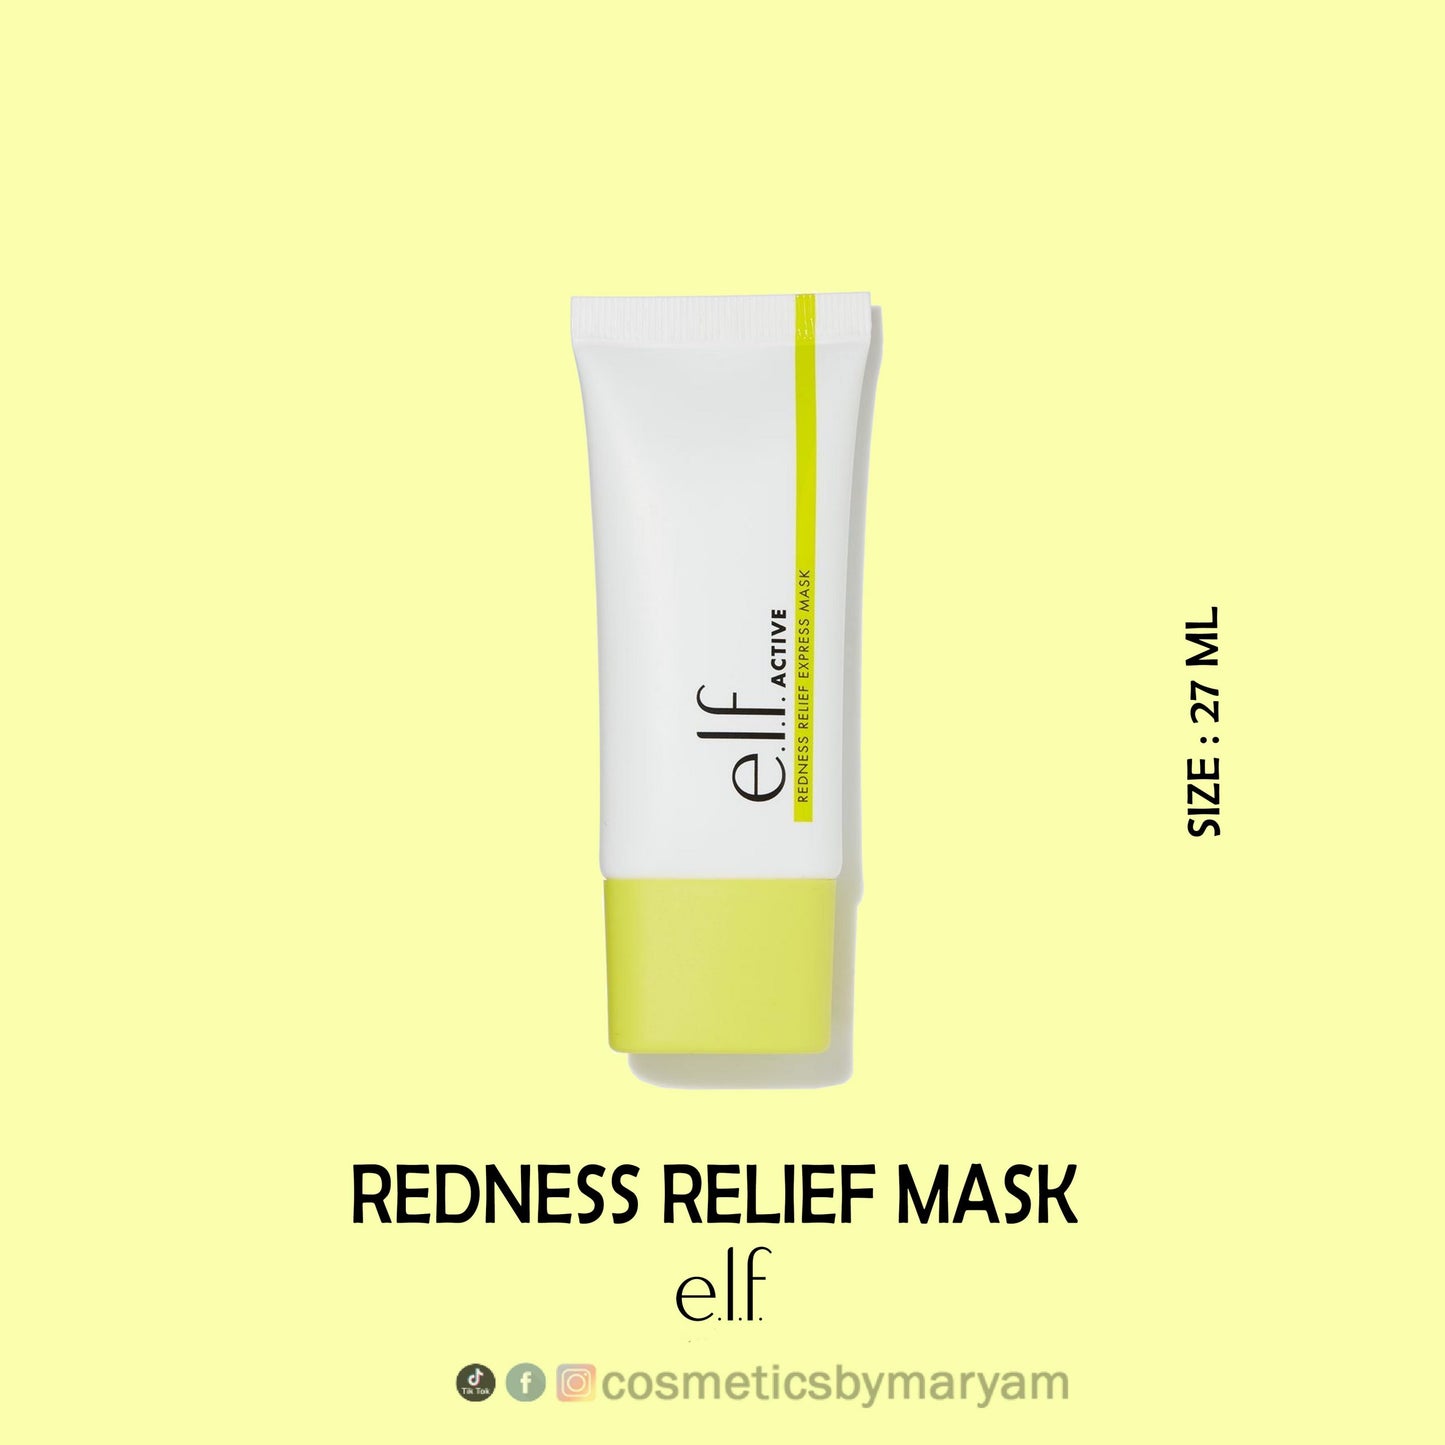 e.l.f. Redness Relief Mask